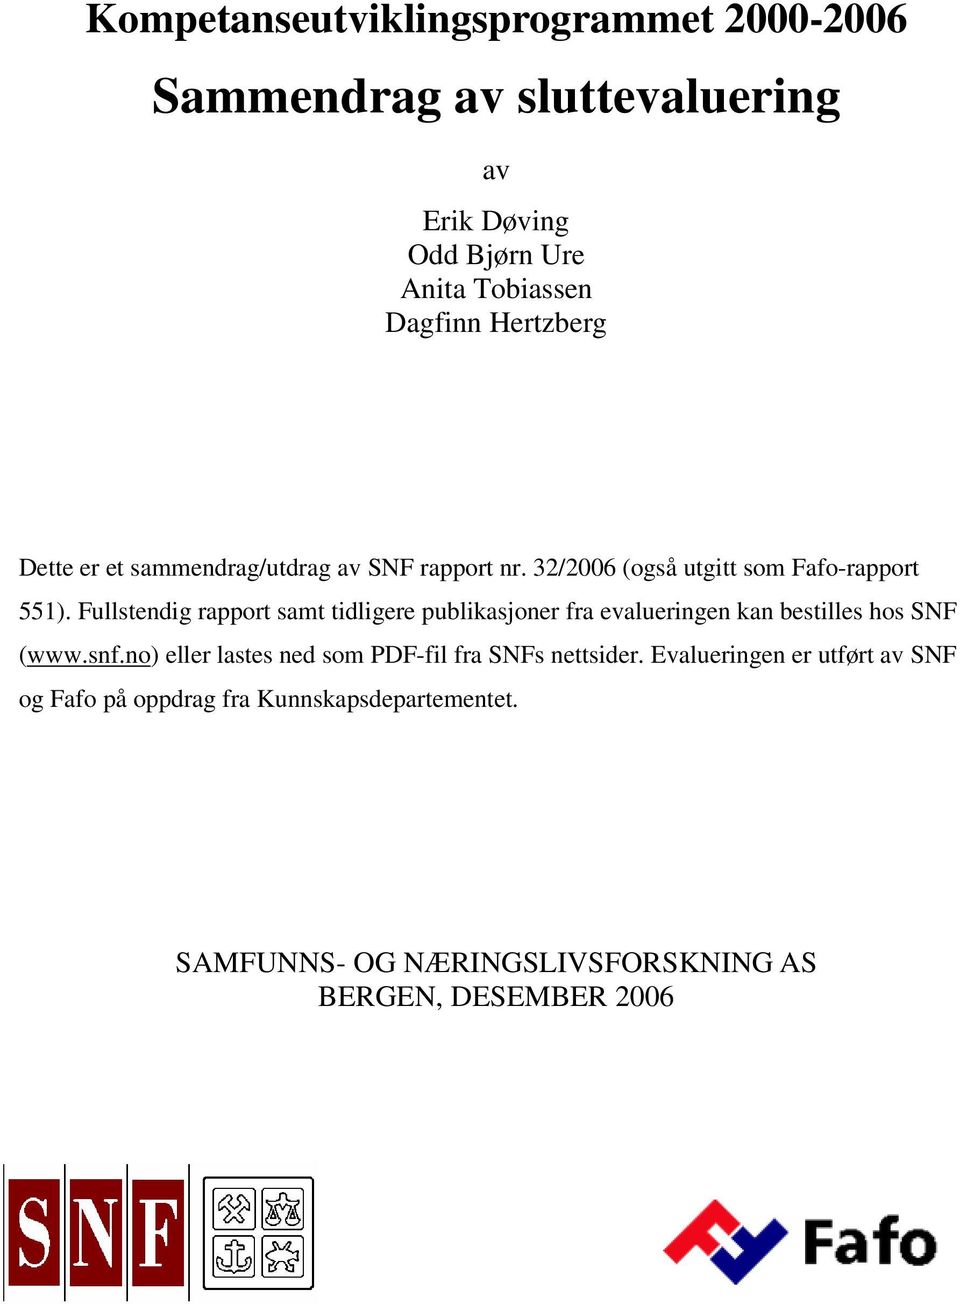 Fullstendig rapport samt tidligere publikasjoner fra evalueringen kan bestilles hos SNF (www.snf.